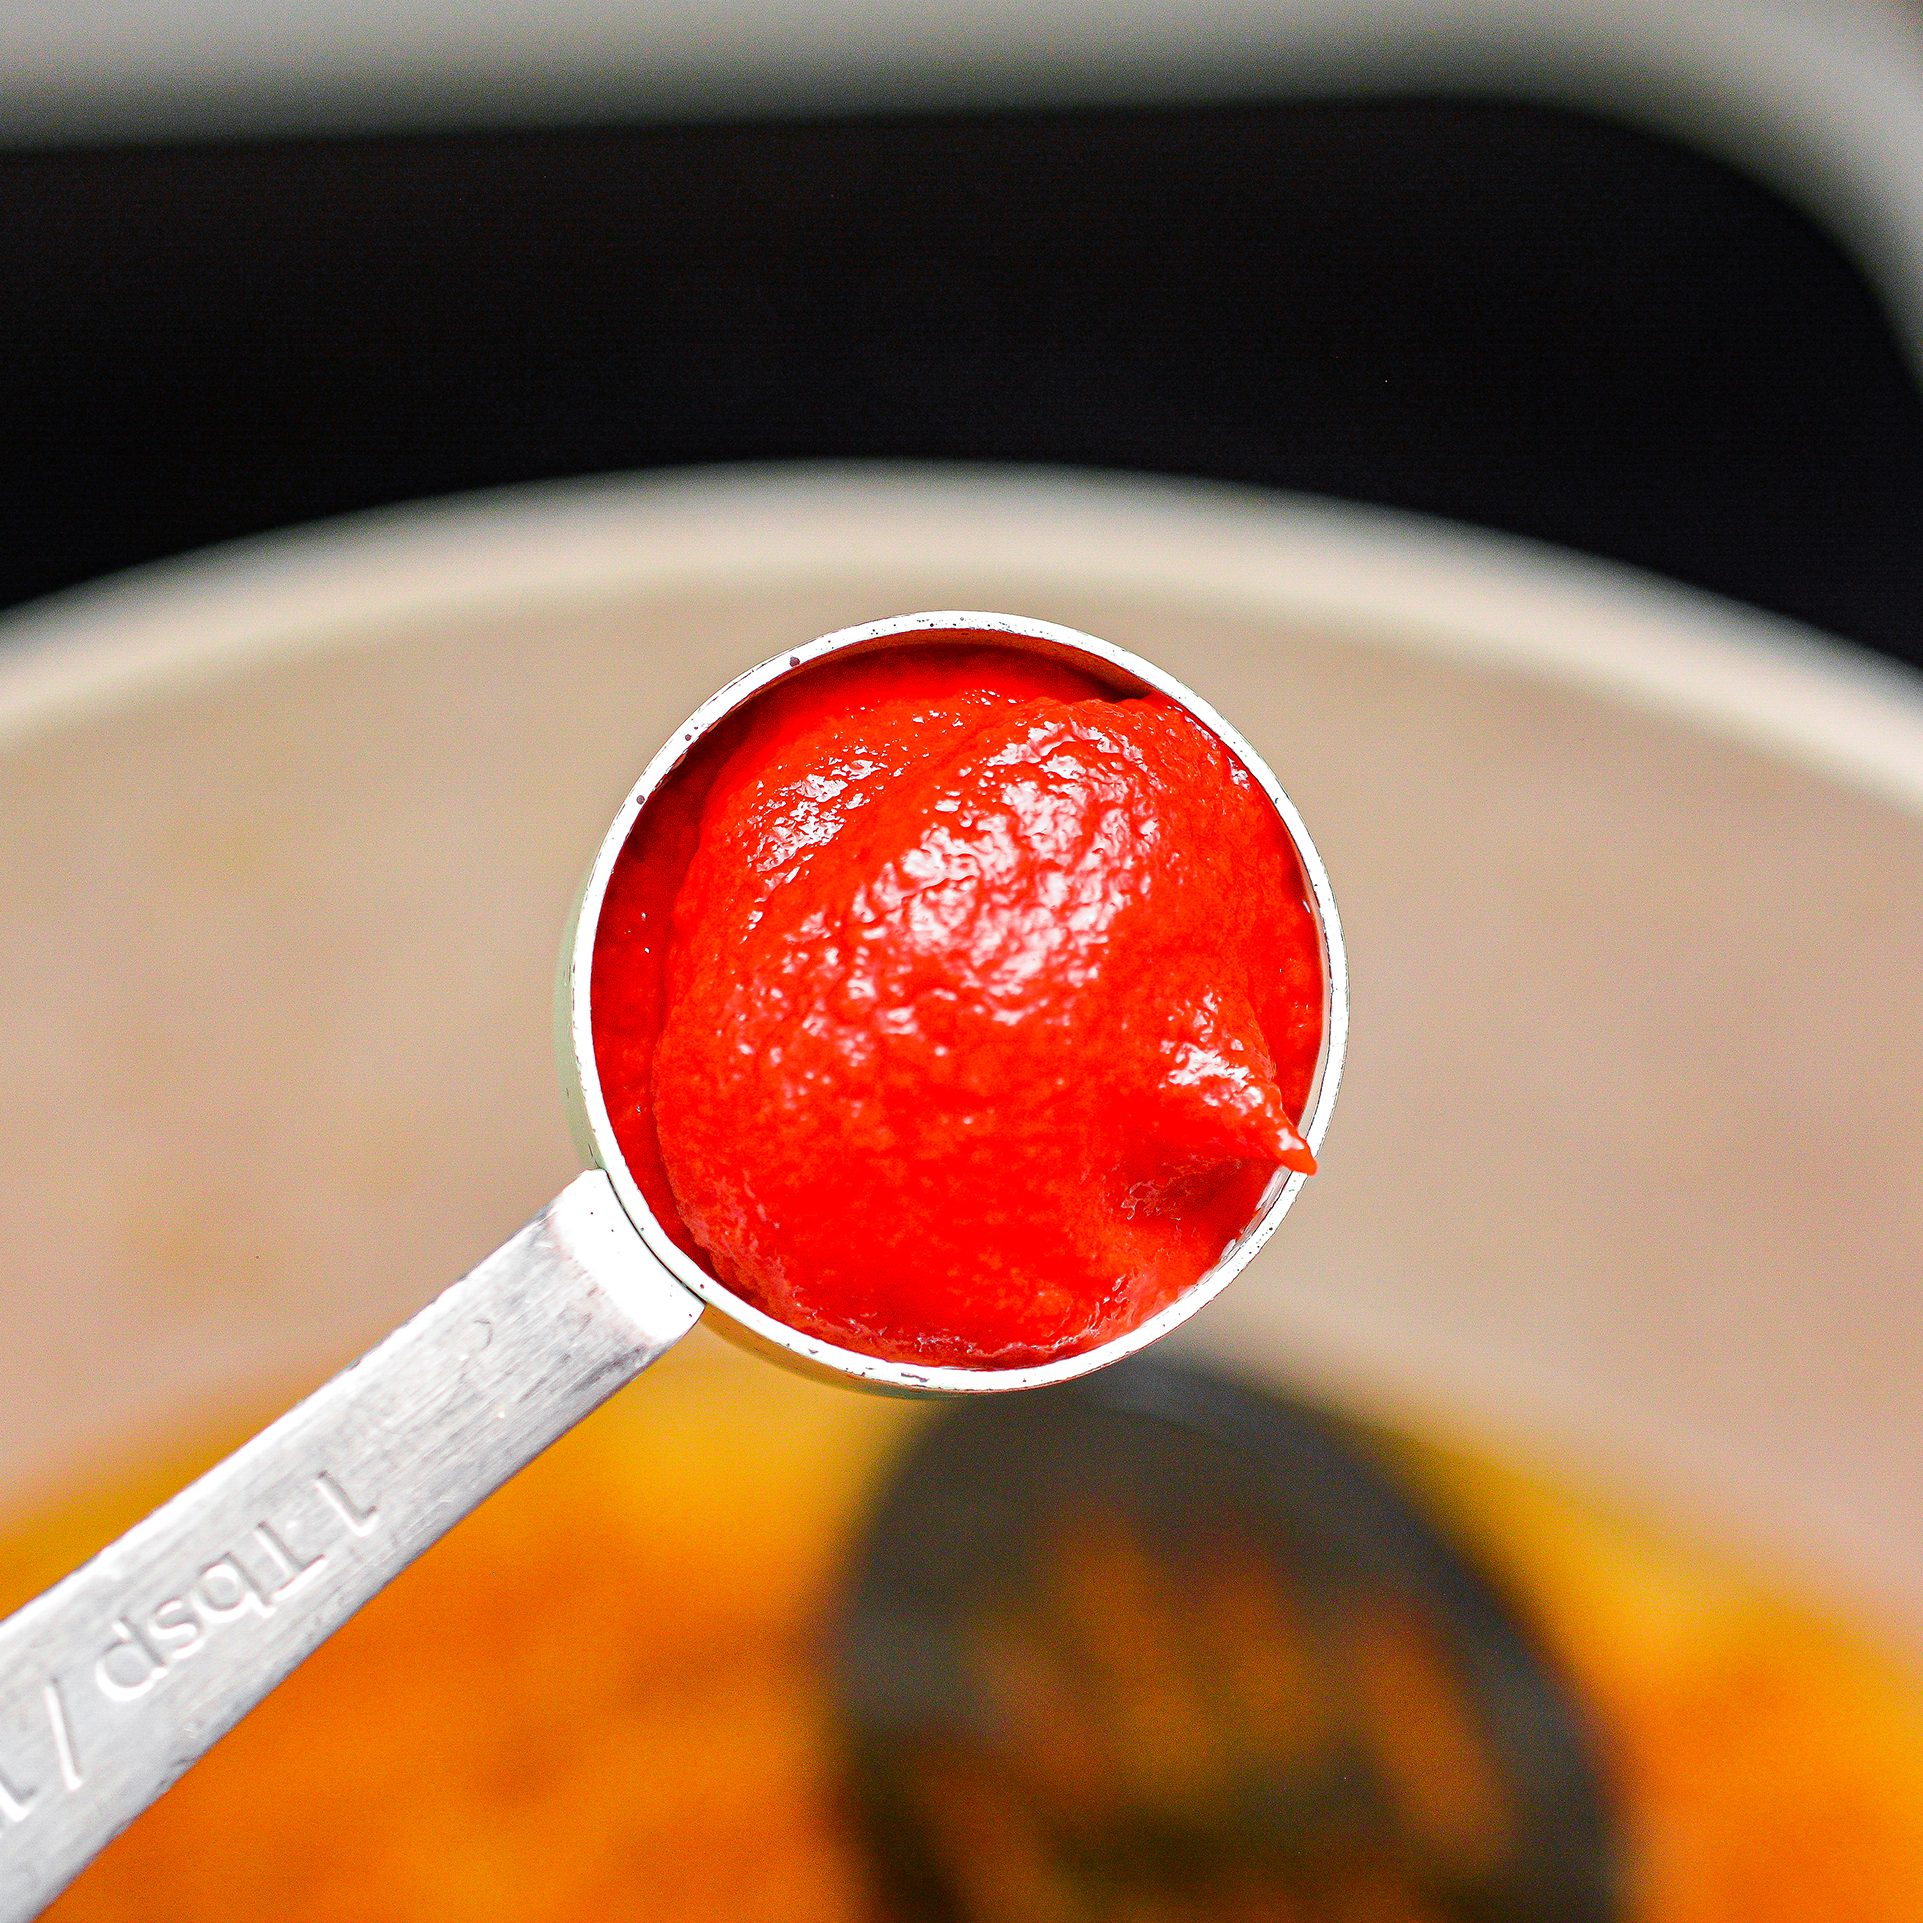 add the tomato paste.